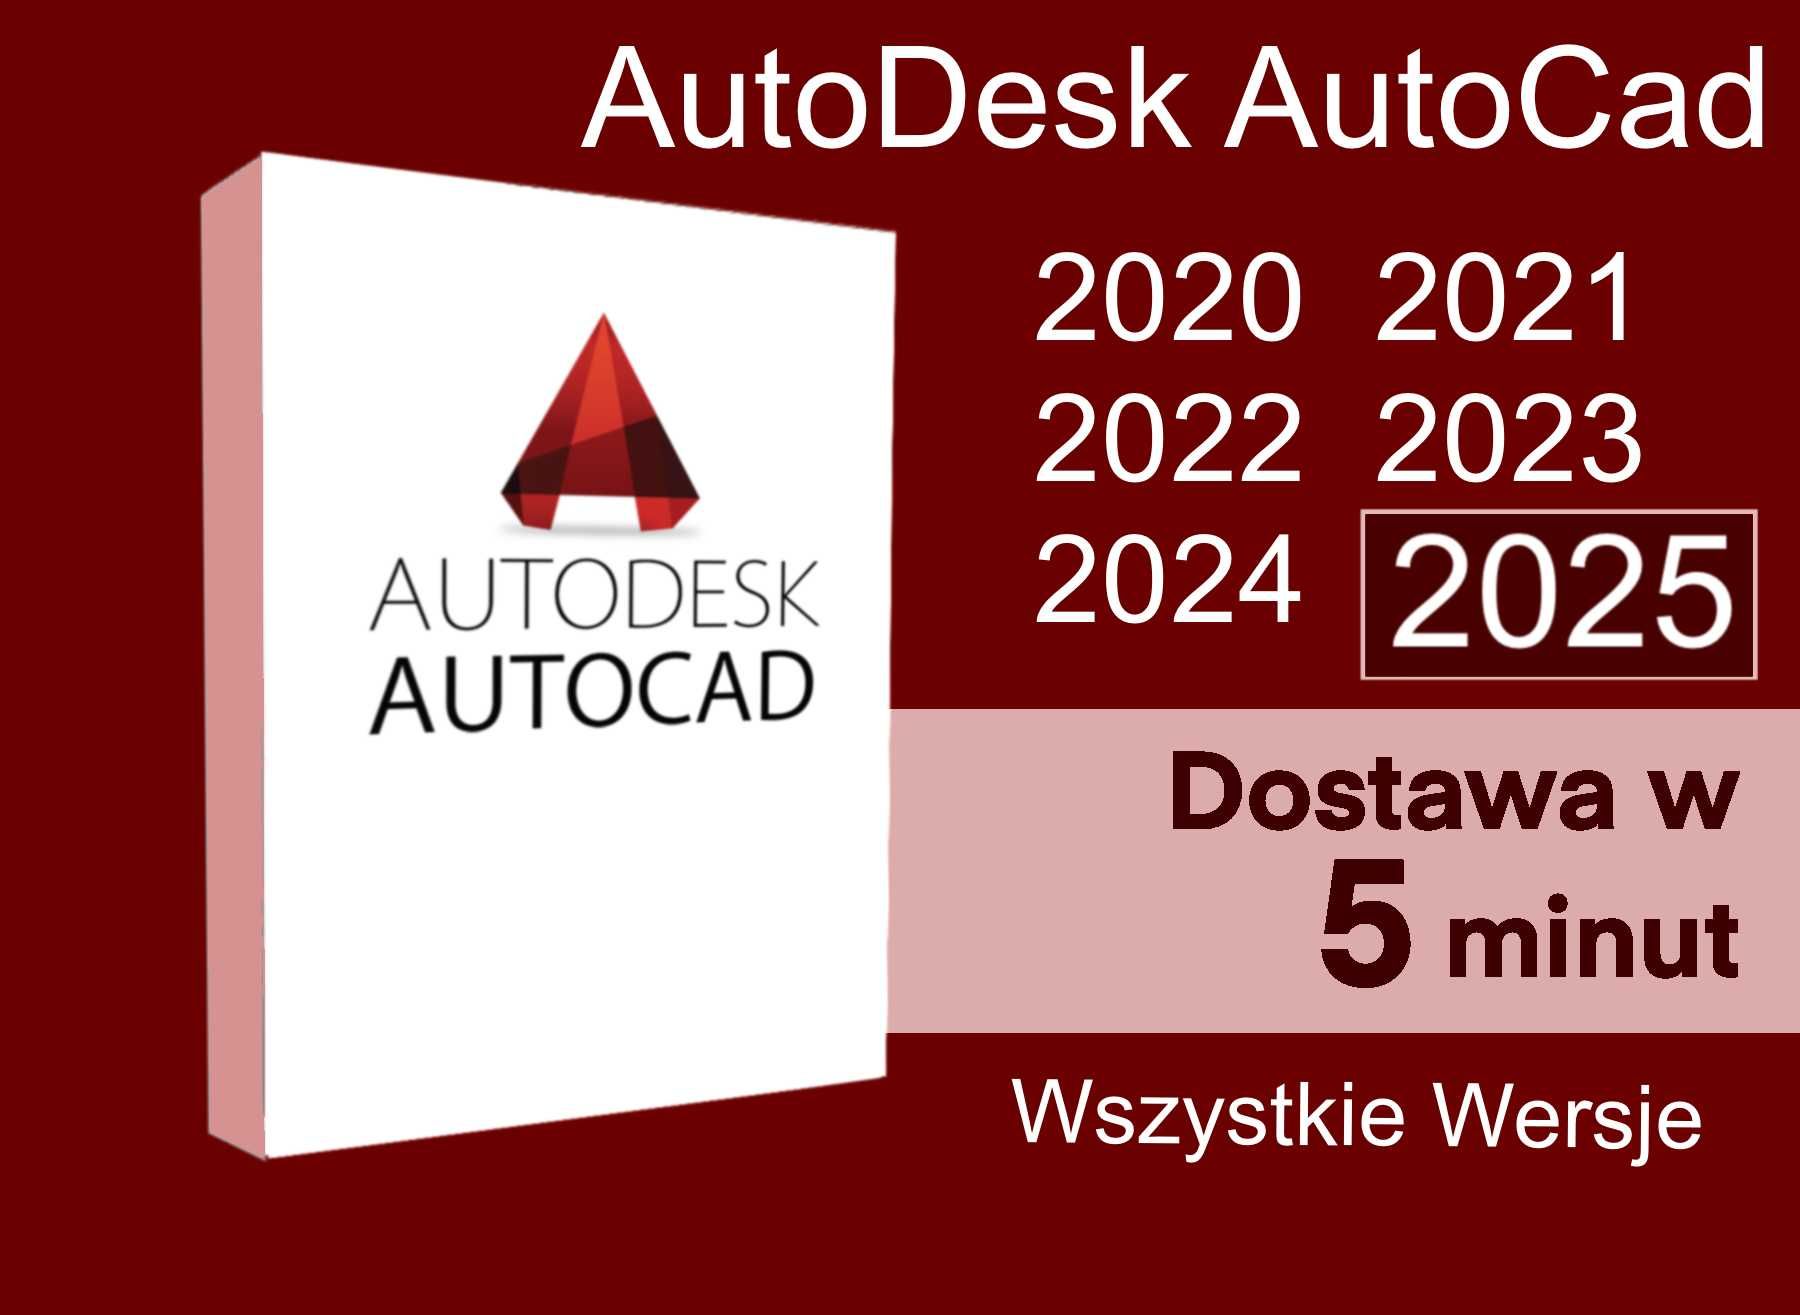 Autodesk AutoCad PL 2020, 2021, 2022, 2023, 2024,2025 Wszystkie Wersje